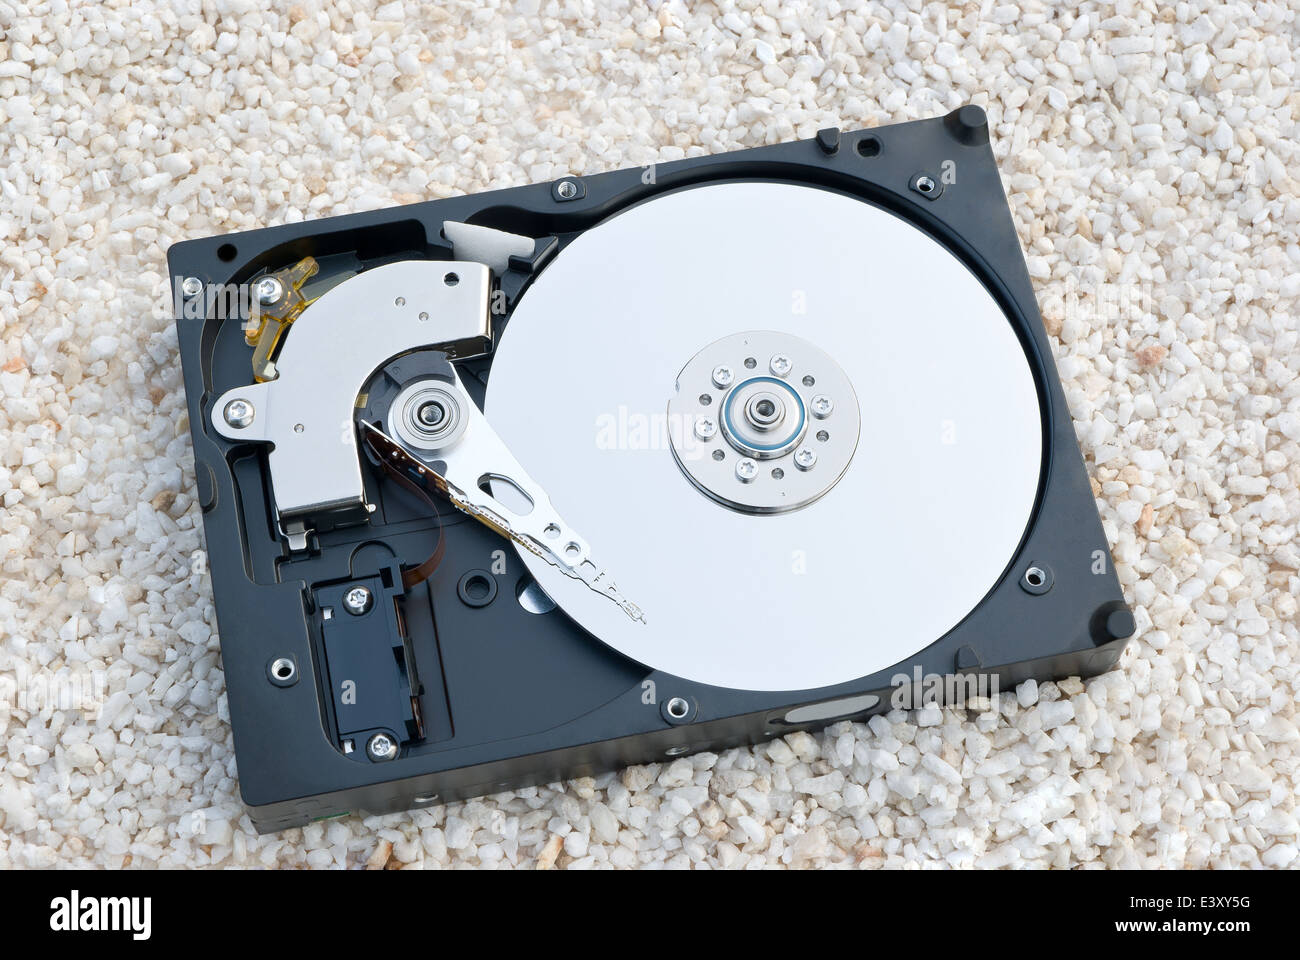 Protección de datos de discos duros en escombros Foto de stock